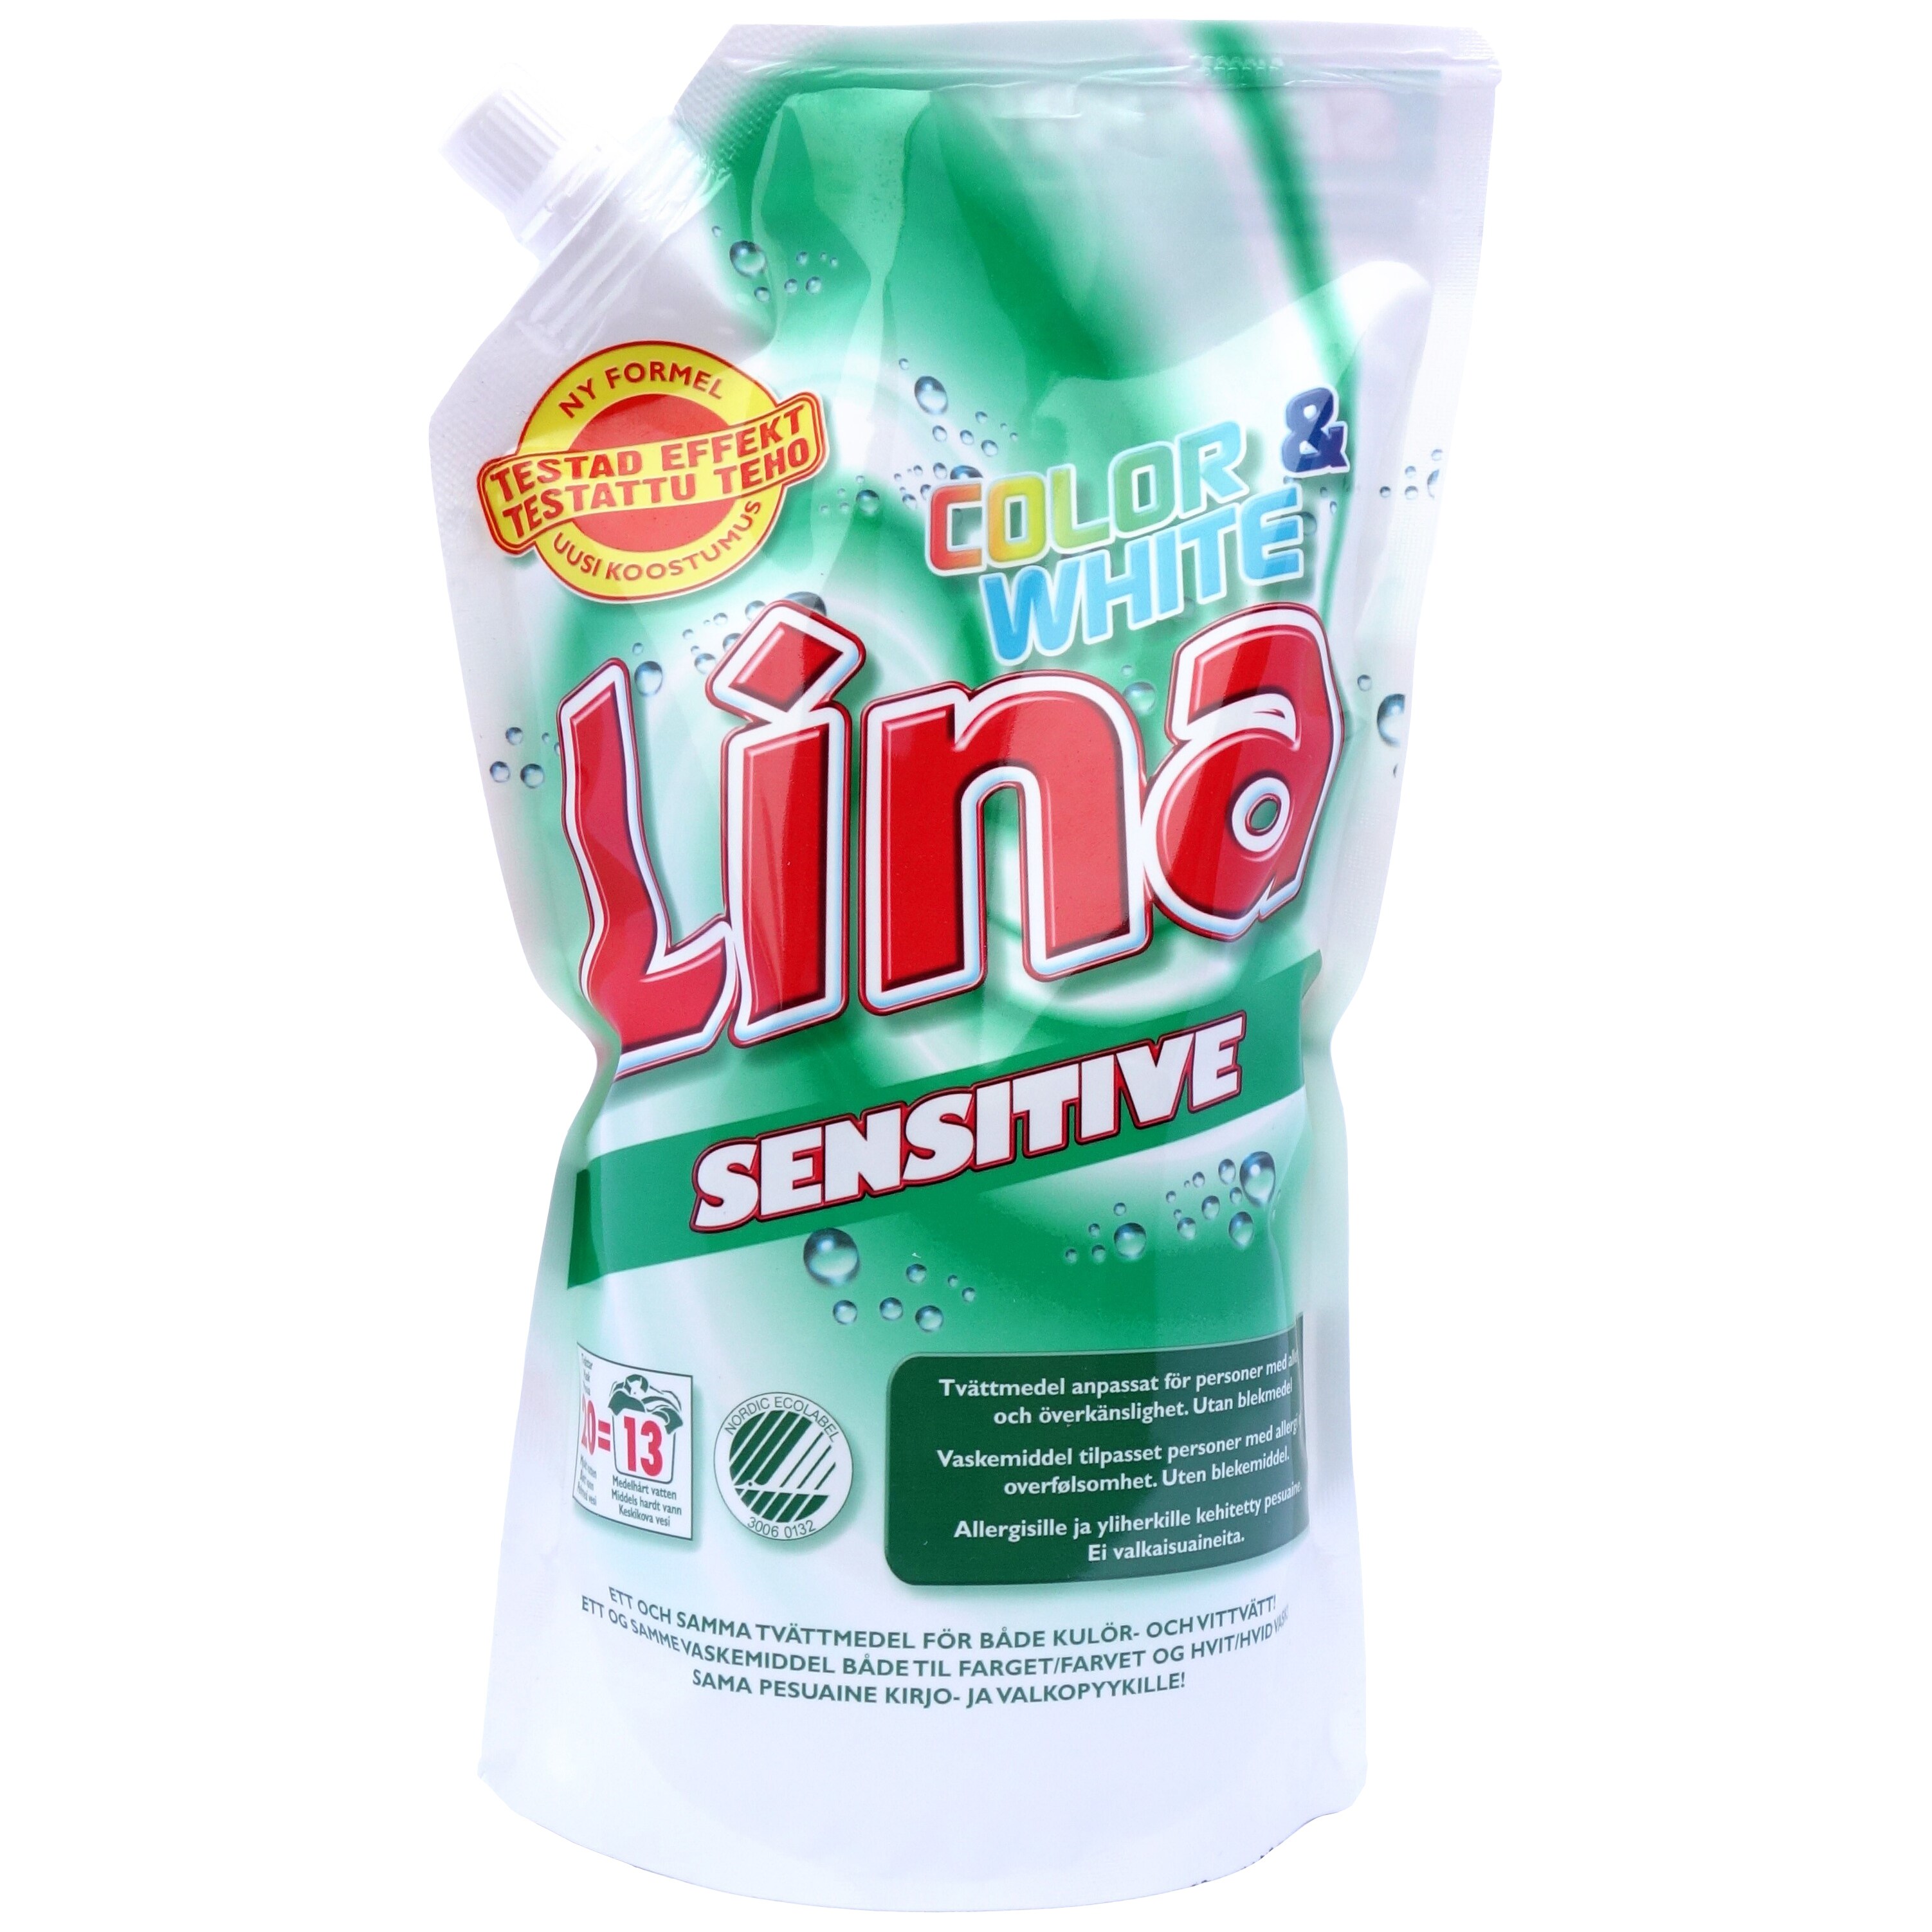 Lina Color & White Sensitive vaskemiddel - Elkjøp